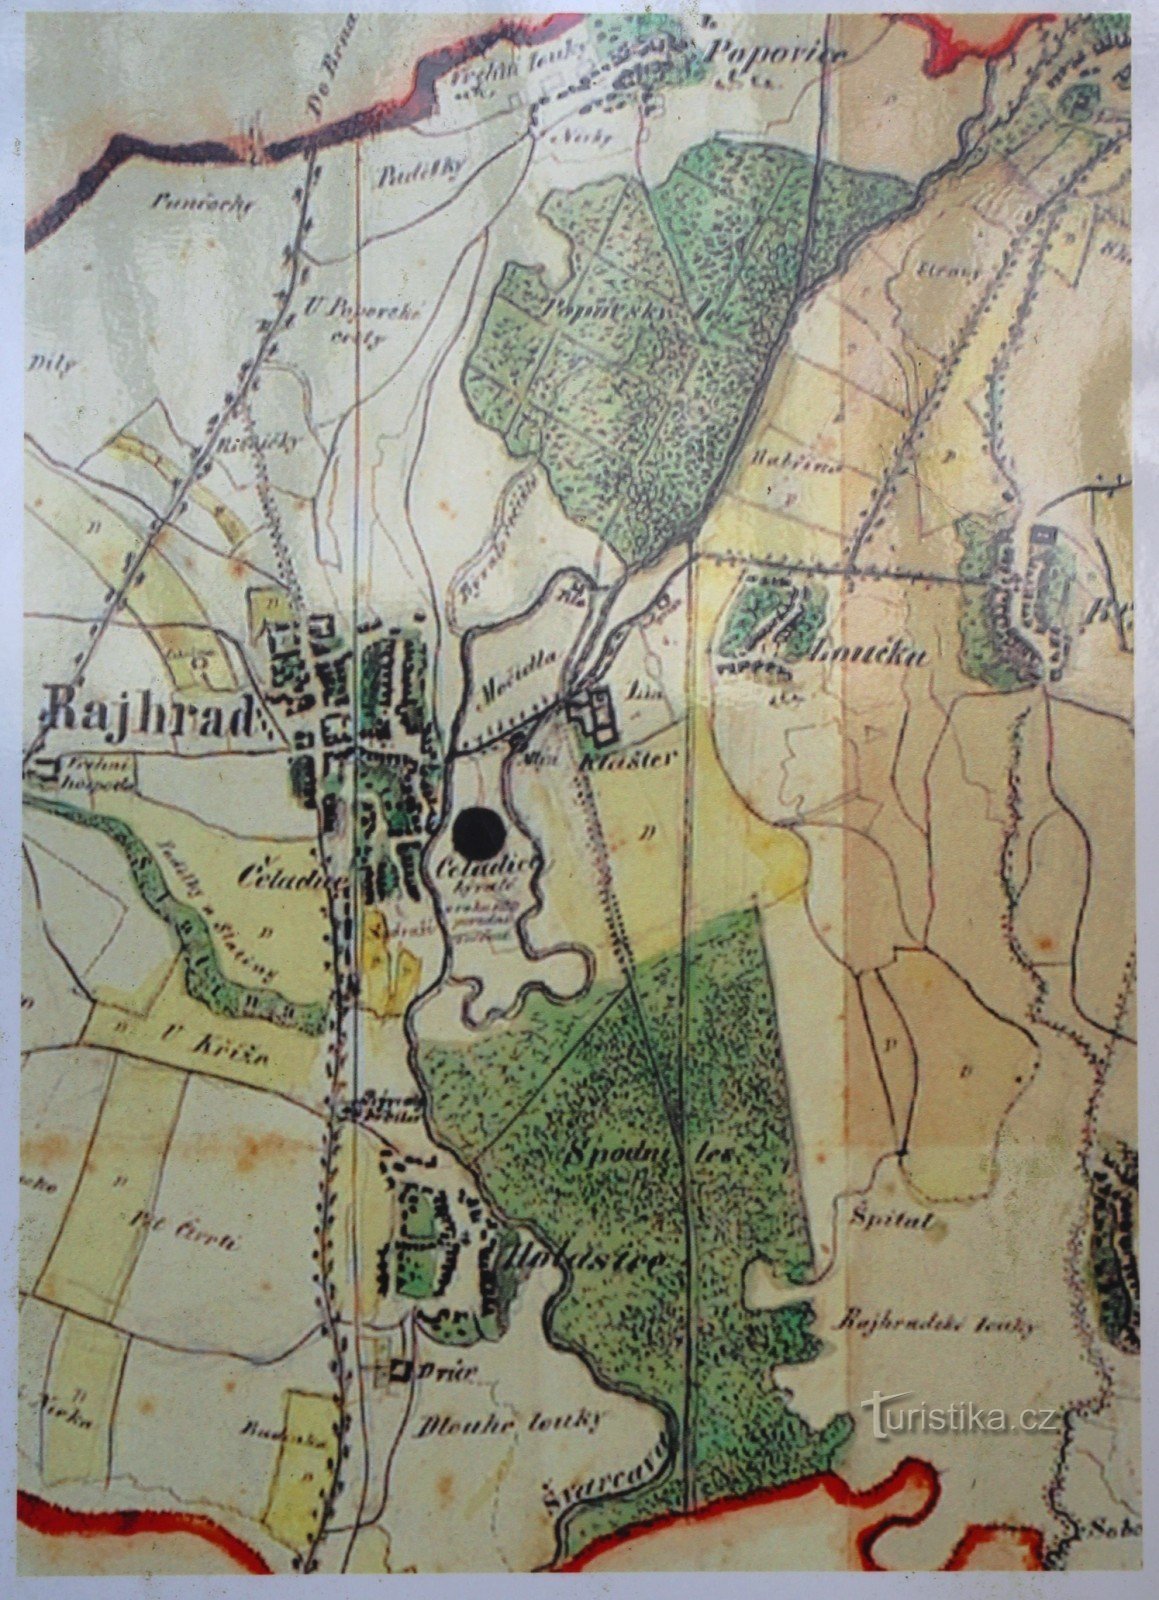 19世紀半ばの修道院周辺の地図。地図の下半分にはっきりと見える